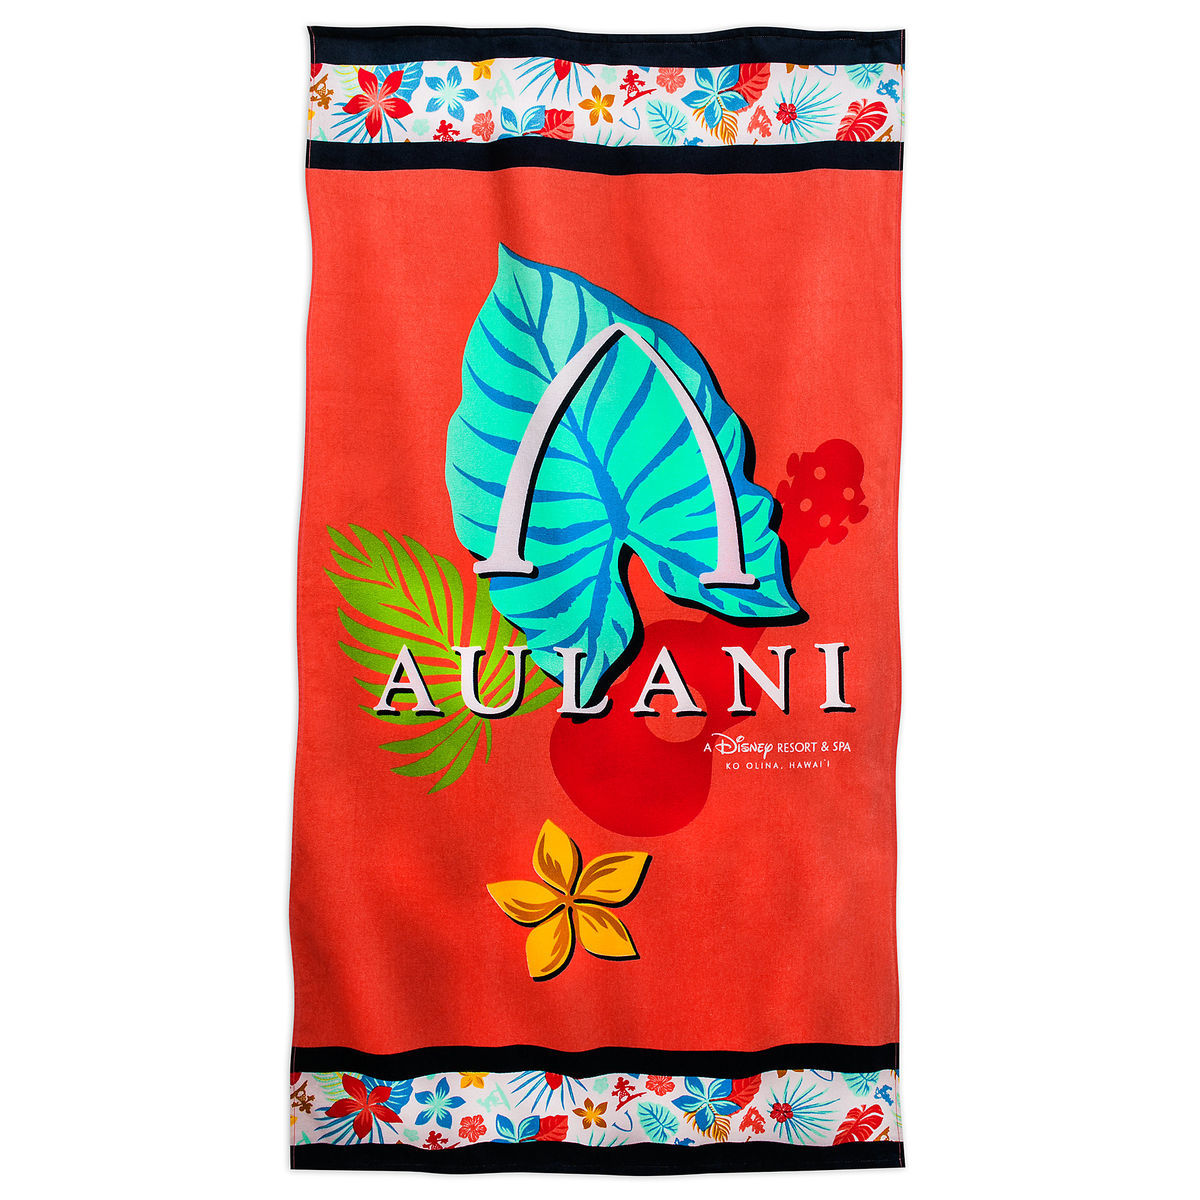 Aulani Towel